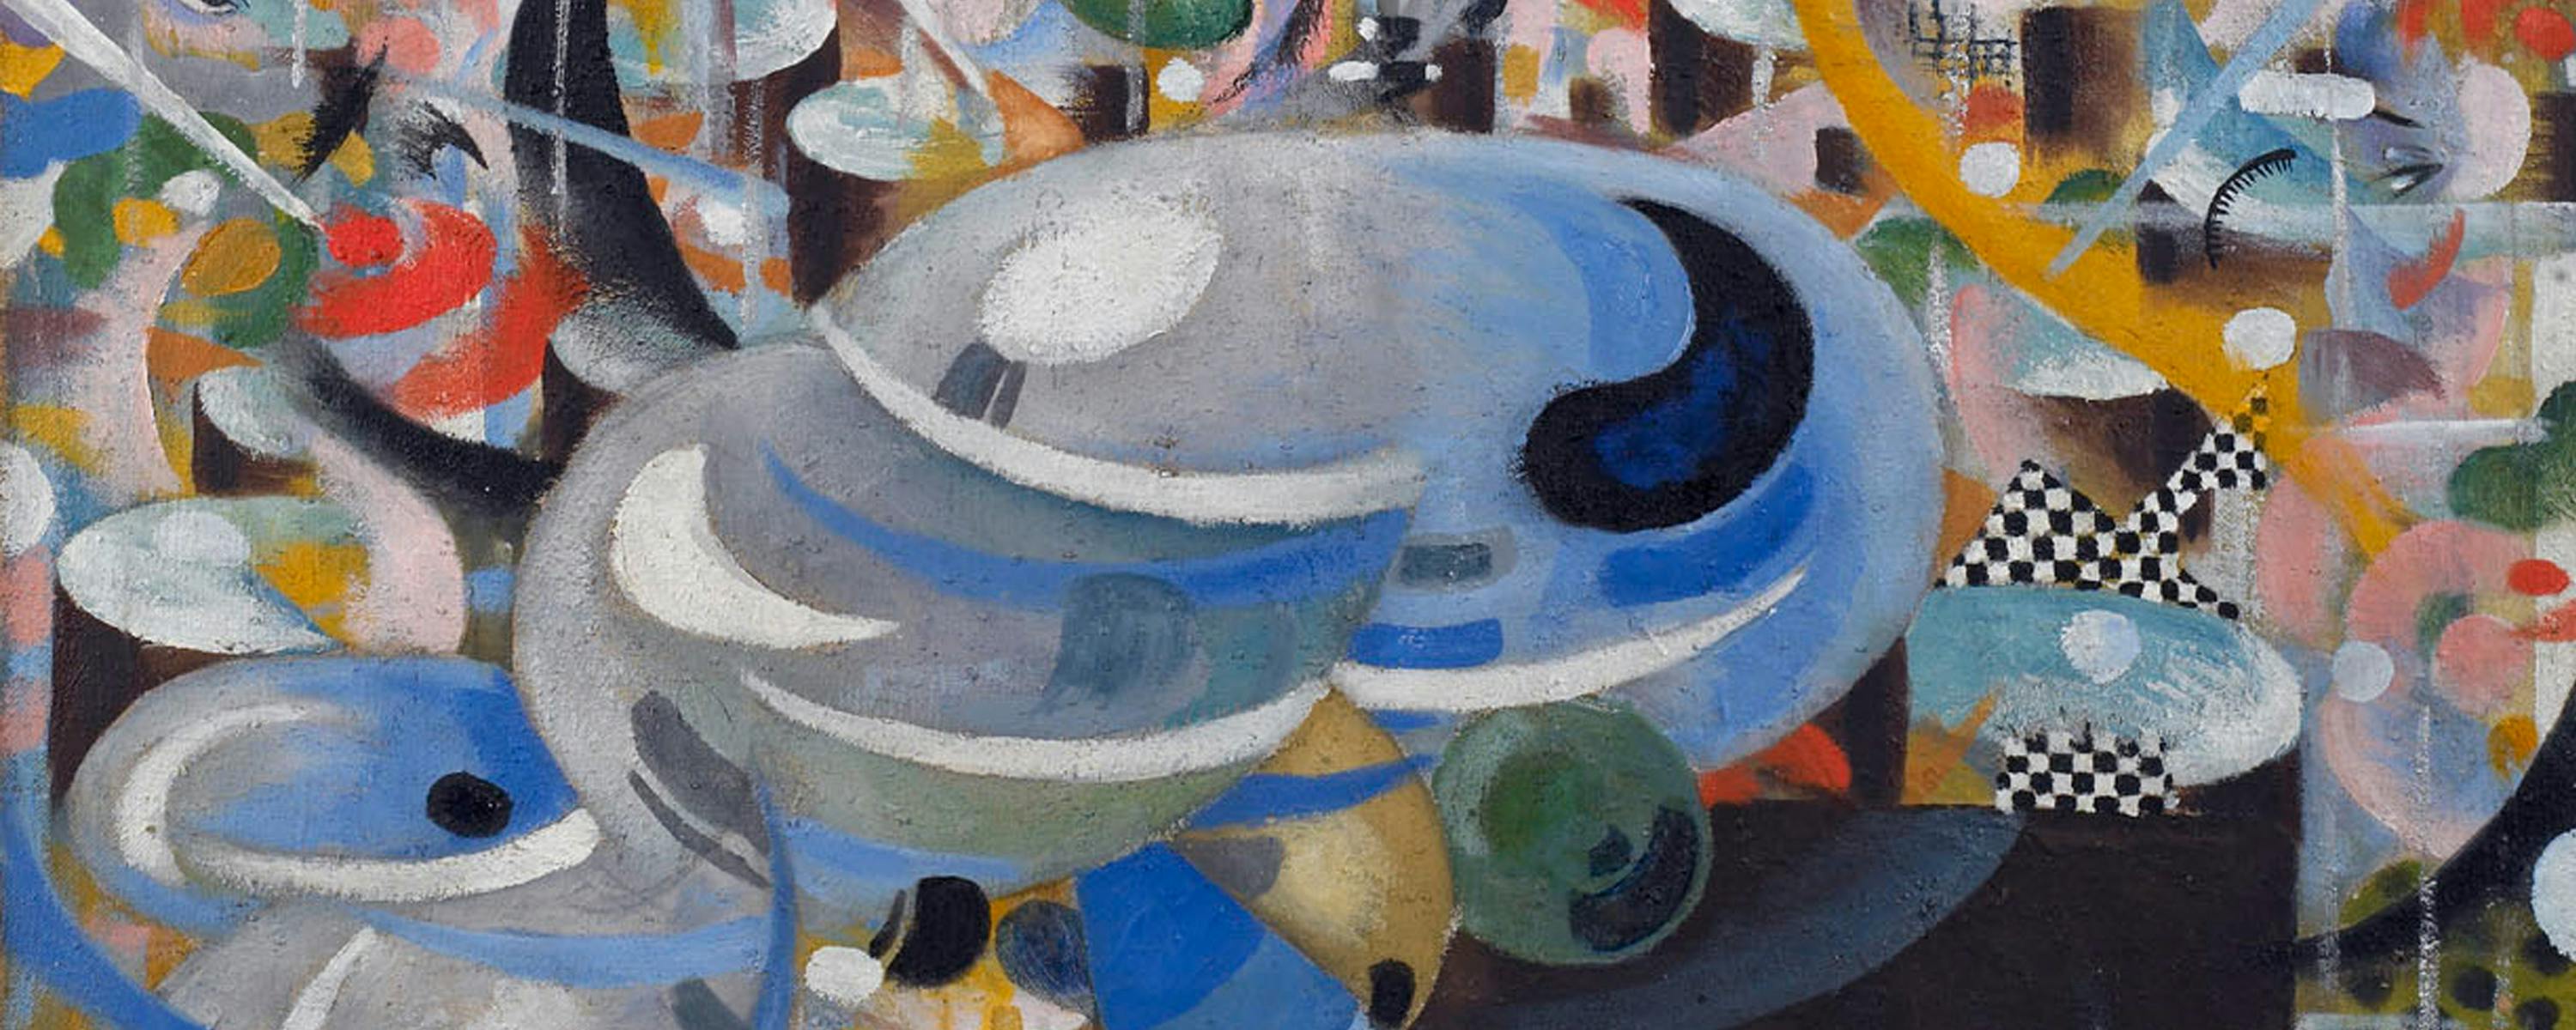 Julius Evola, "Five o' clock Tea", 1917-1918, olio su tela (particolare) - Fondazione Brescia Musei